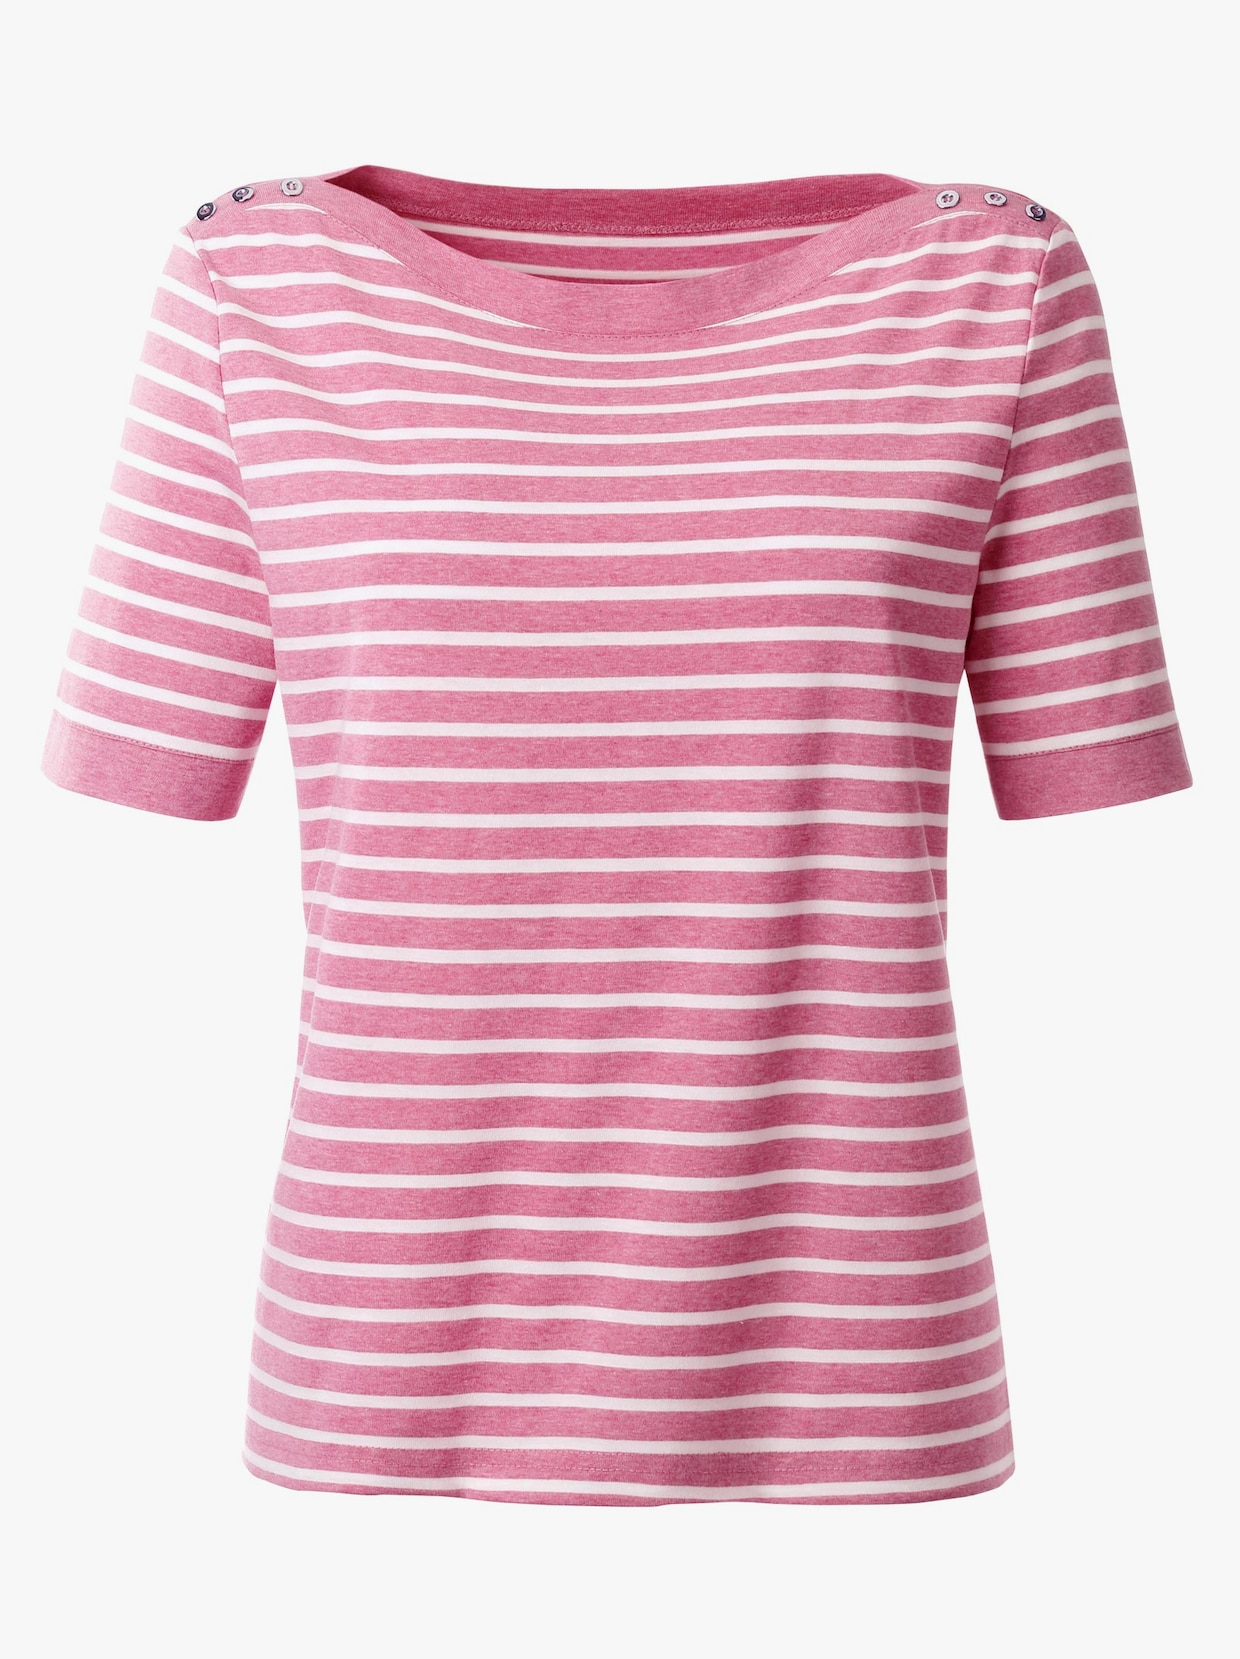 Tričko s krátkým rukávem - růžová-bílá